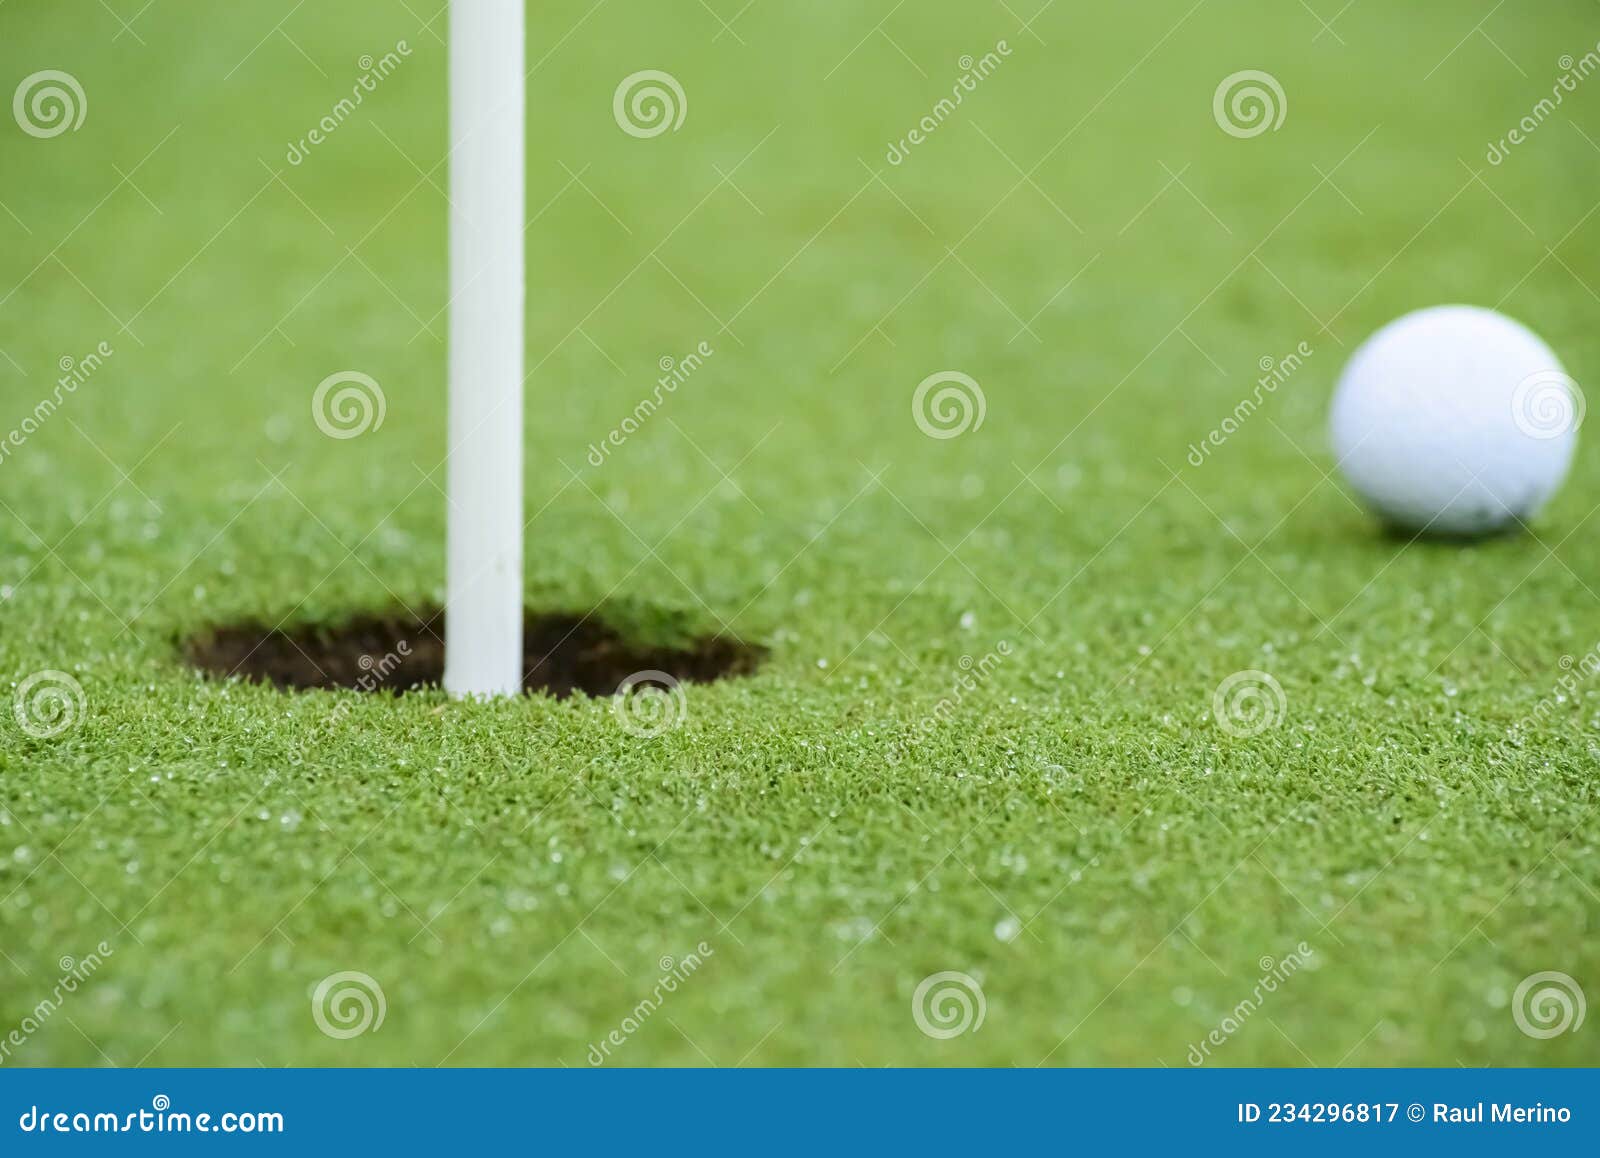 pelota de golf apunto de entrar en el hoyo